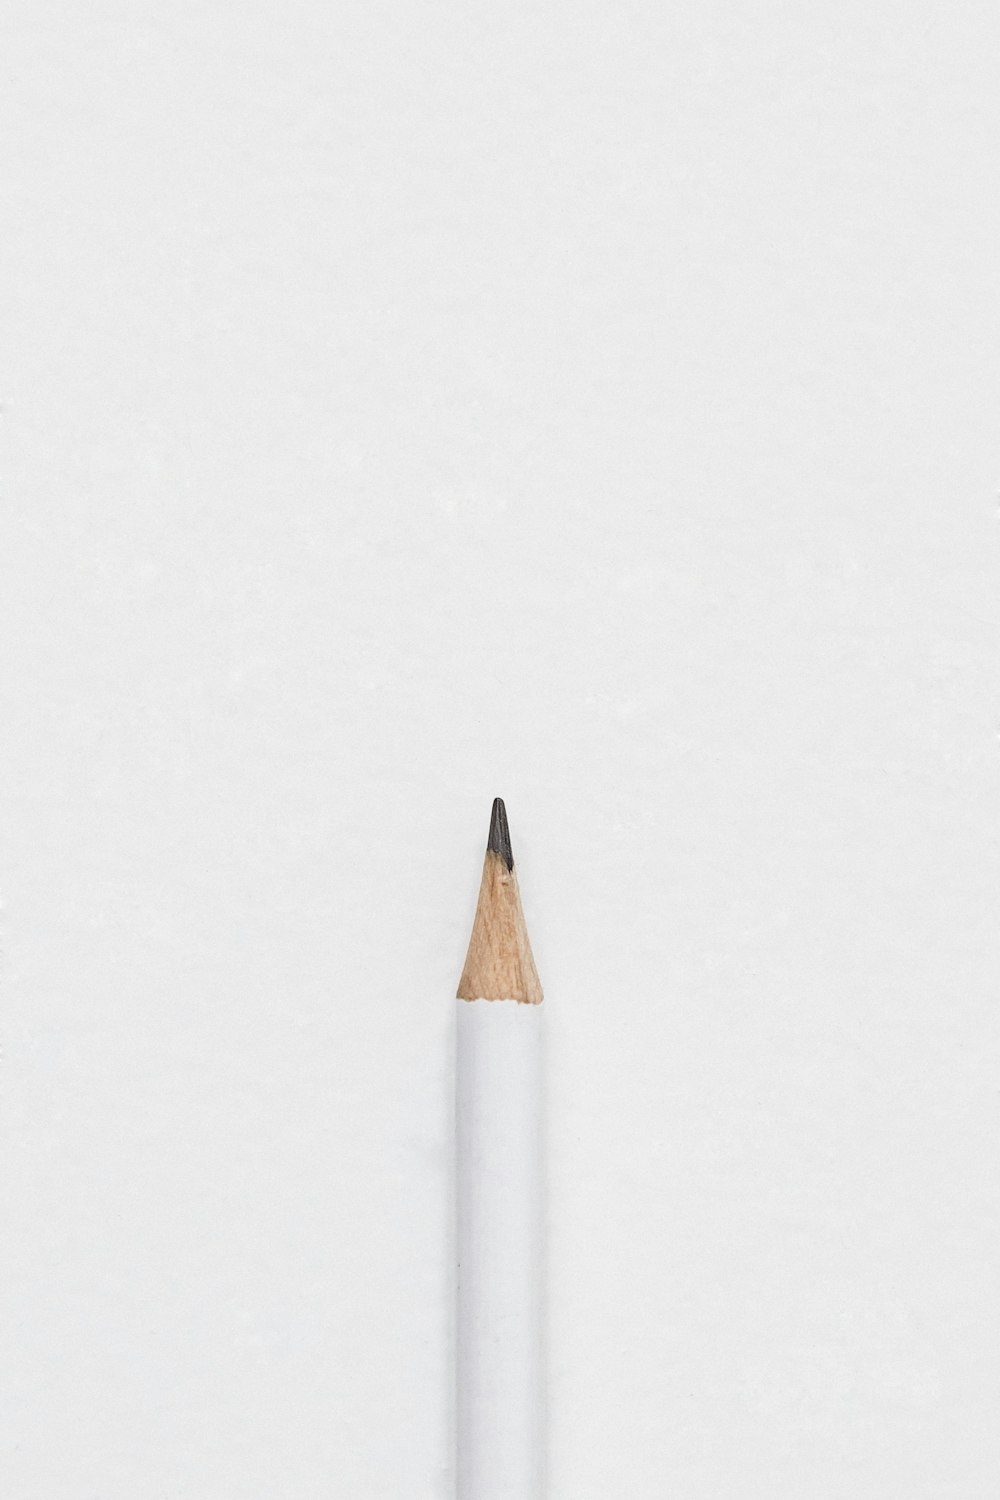 표면에 흰색 연필